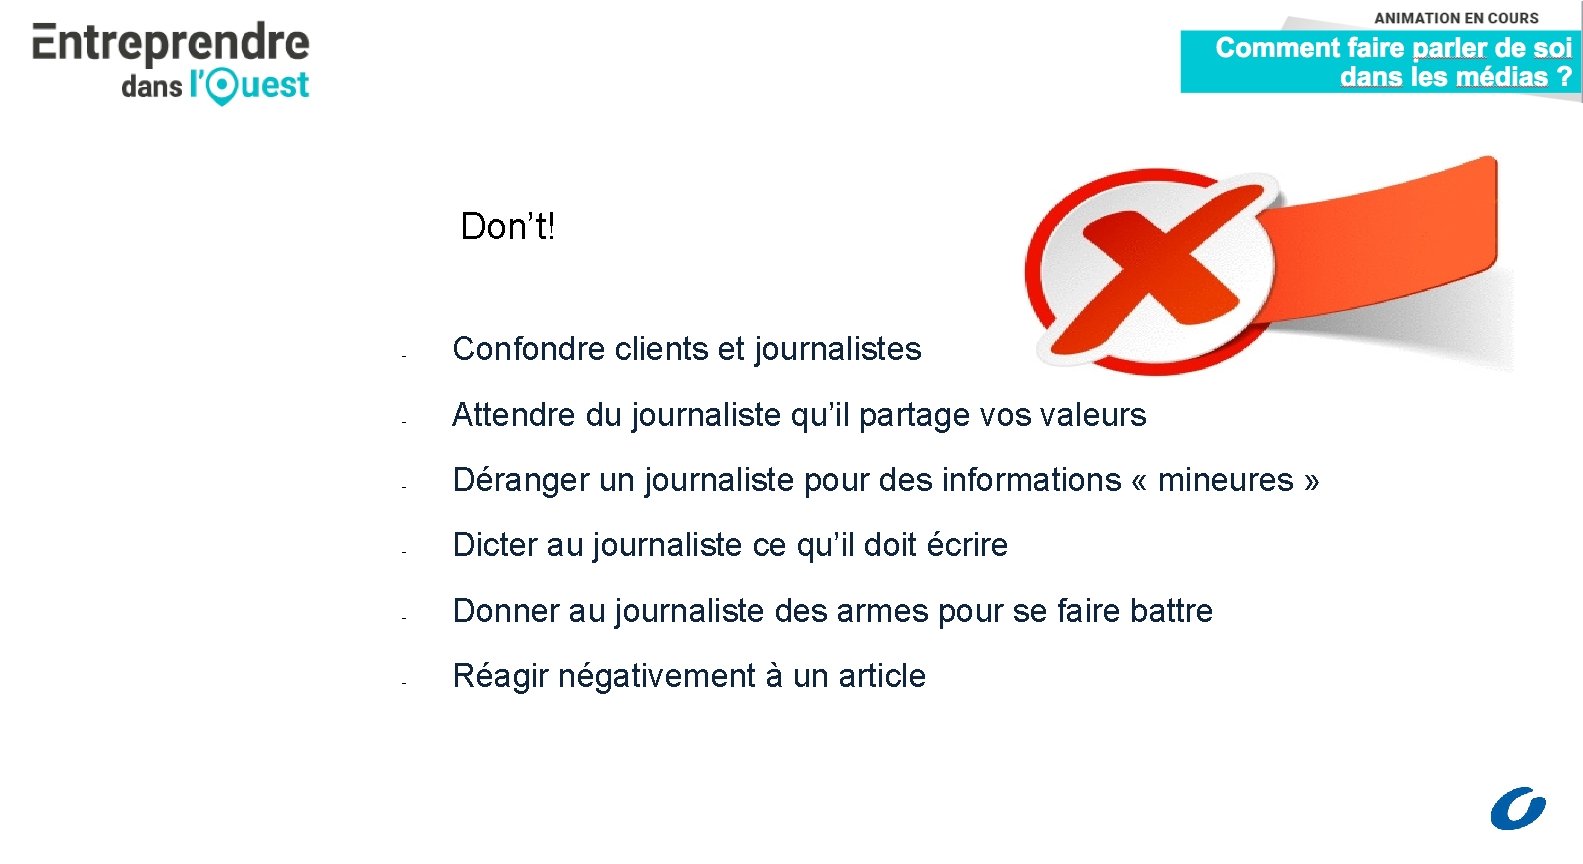 DON’T Don’t! - Confondre clients et journalistes - Attendre du journaliste qu’il partage vos